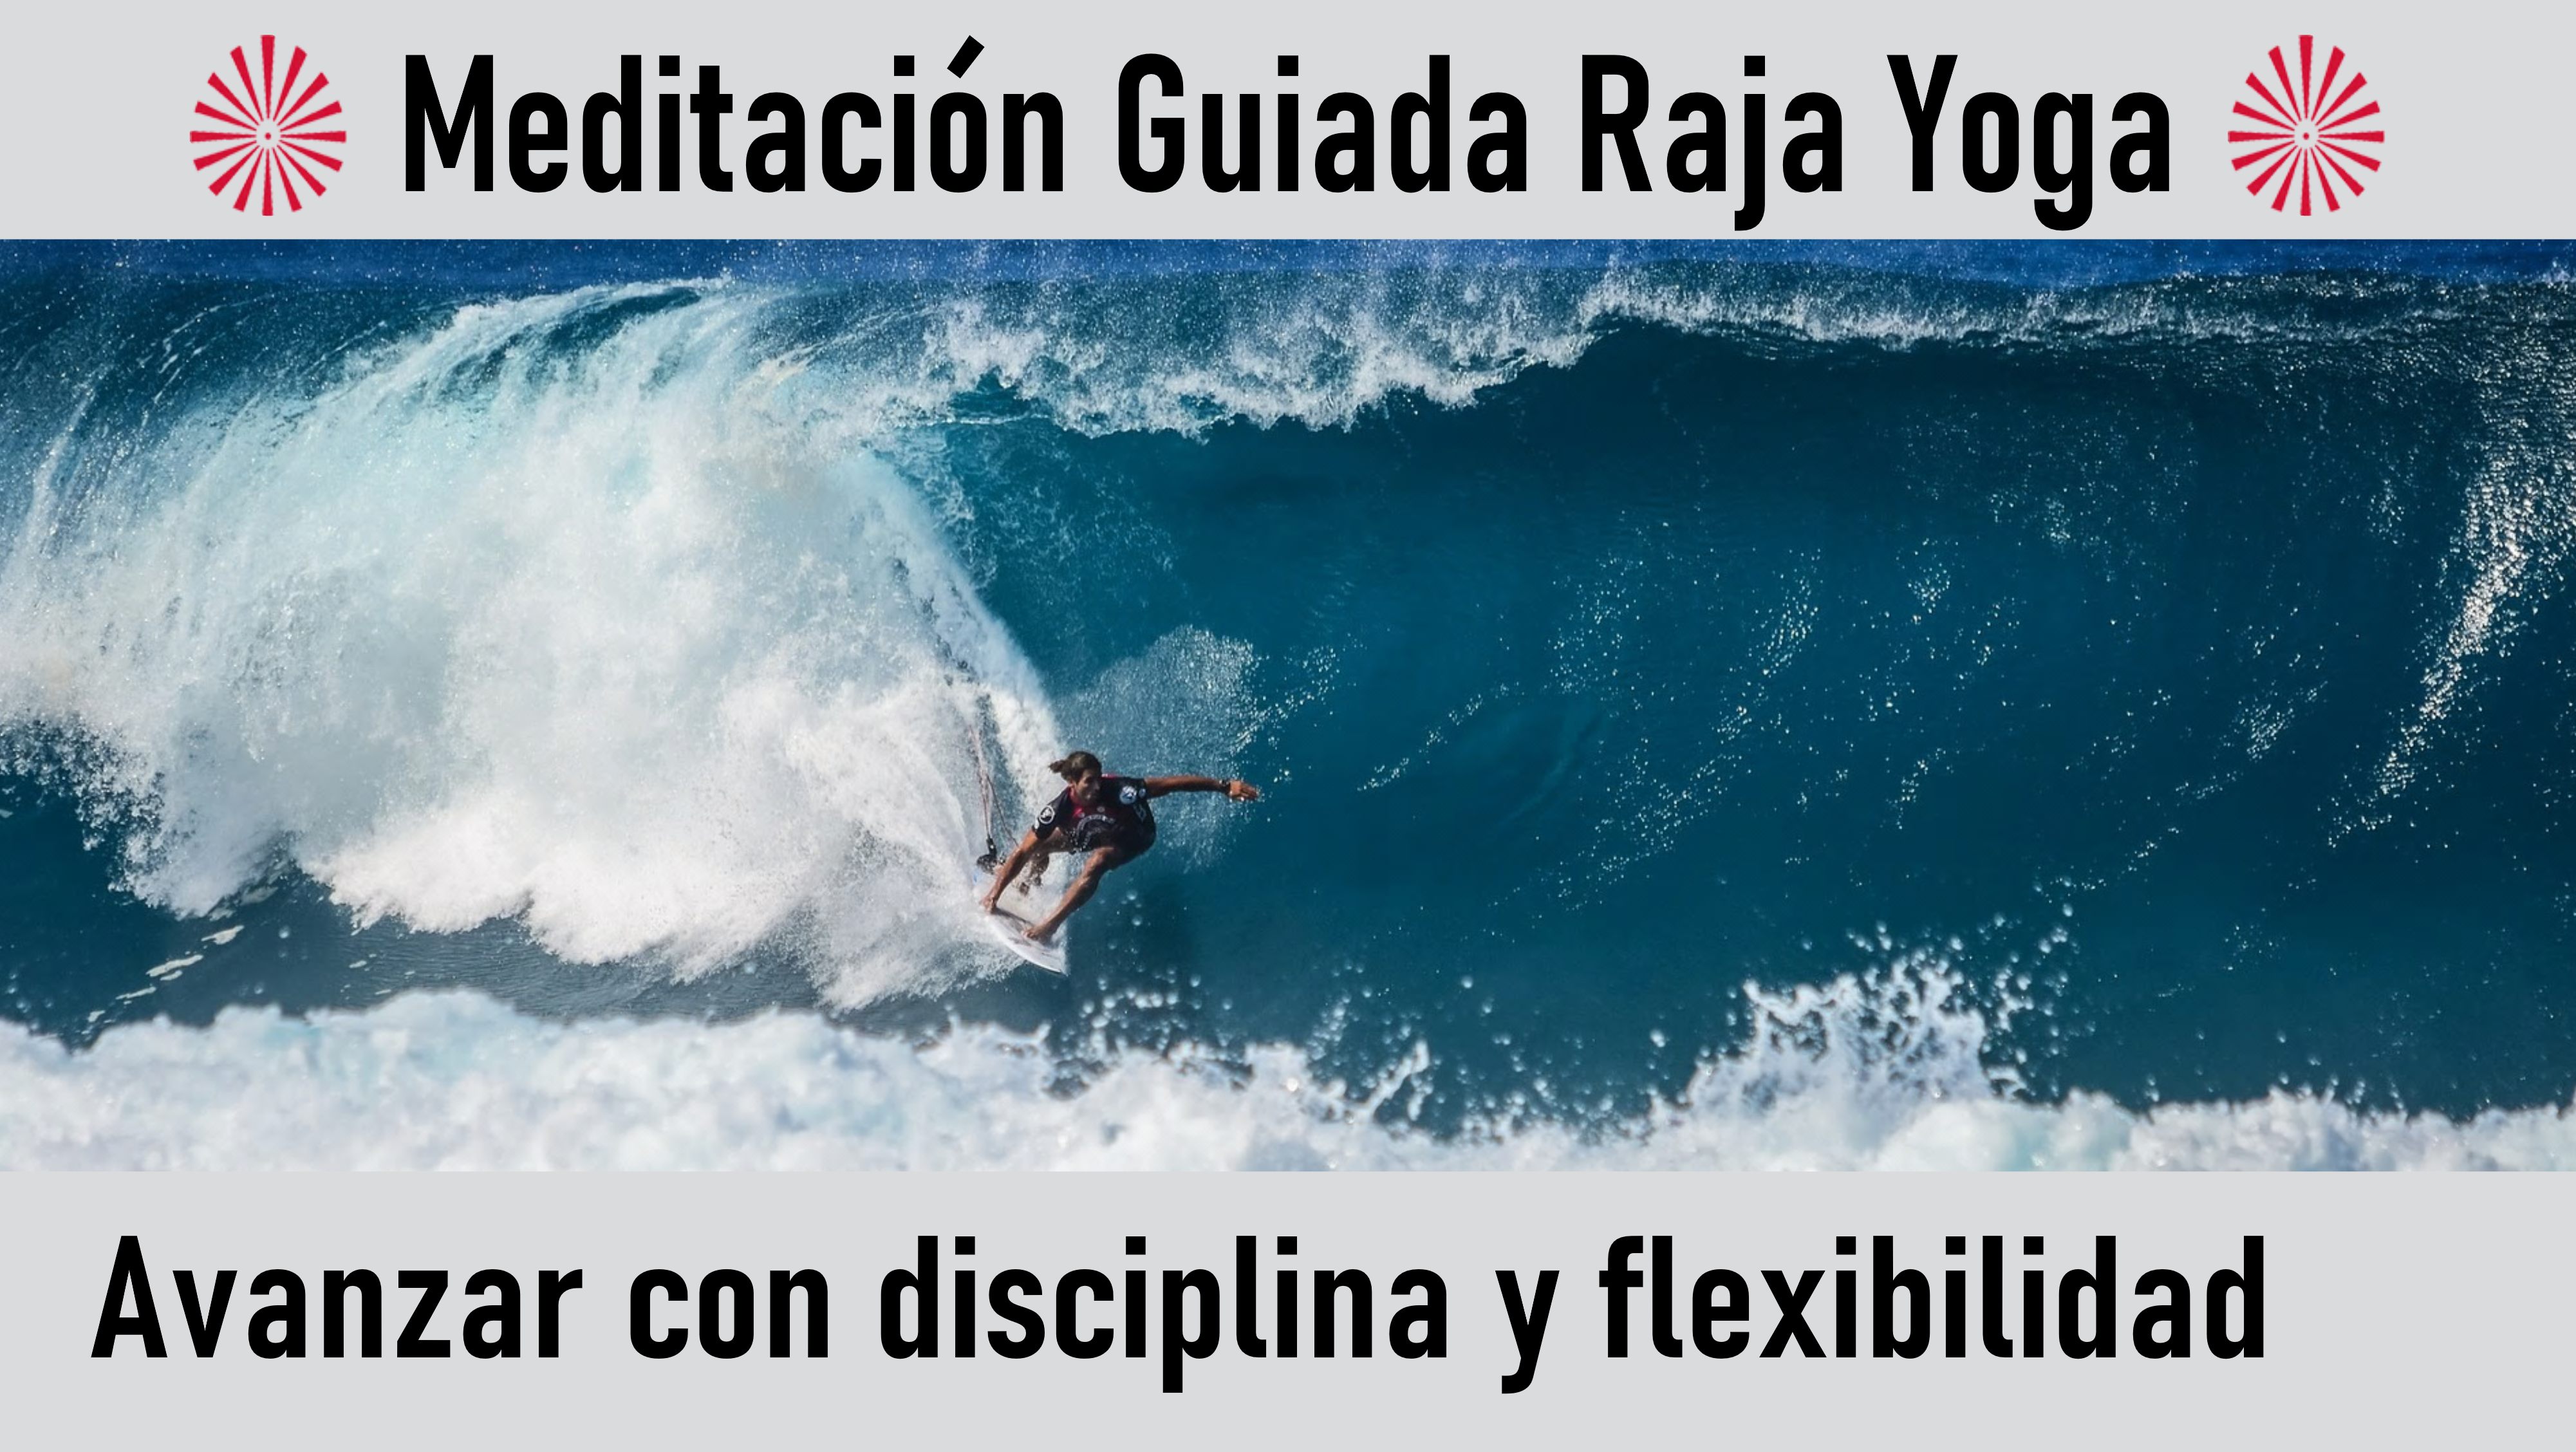 Meditación Raja Yoga: Avanzar con disciplina y flexibilidad (15 Agosto 2020) On-line desde Valencia